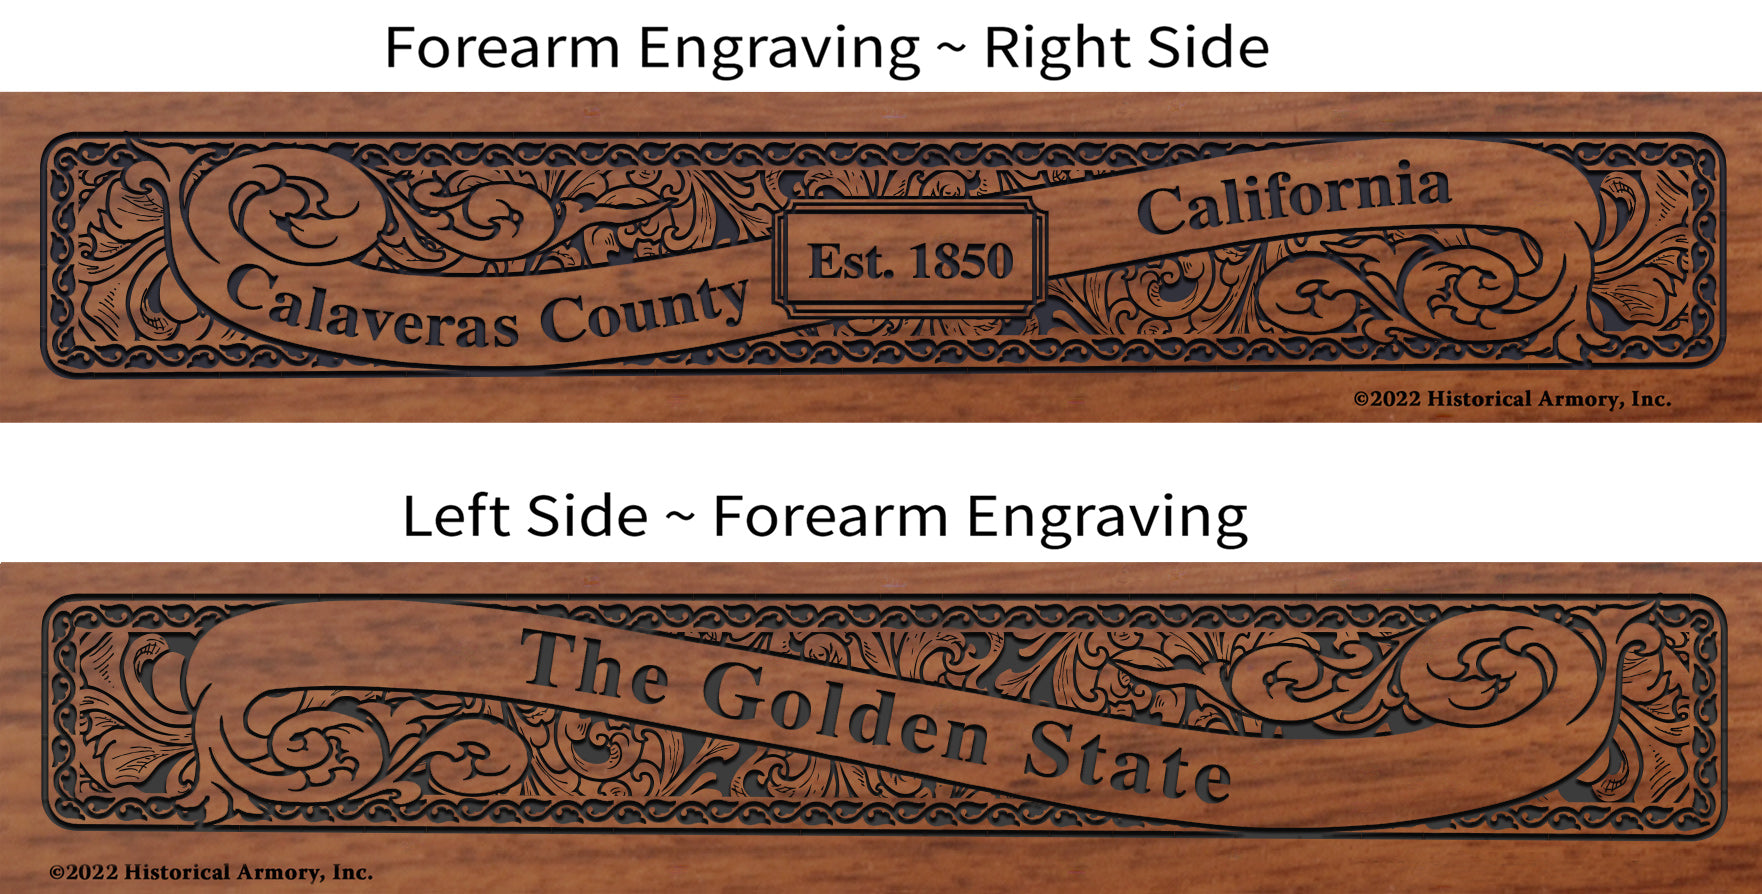 Calaveras County California Engraved Rifle Forearm